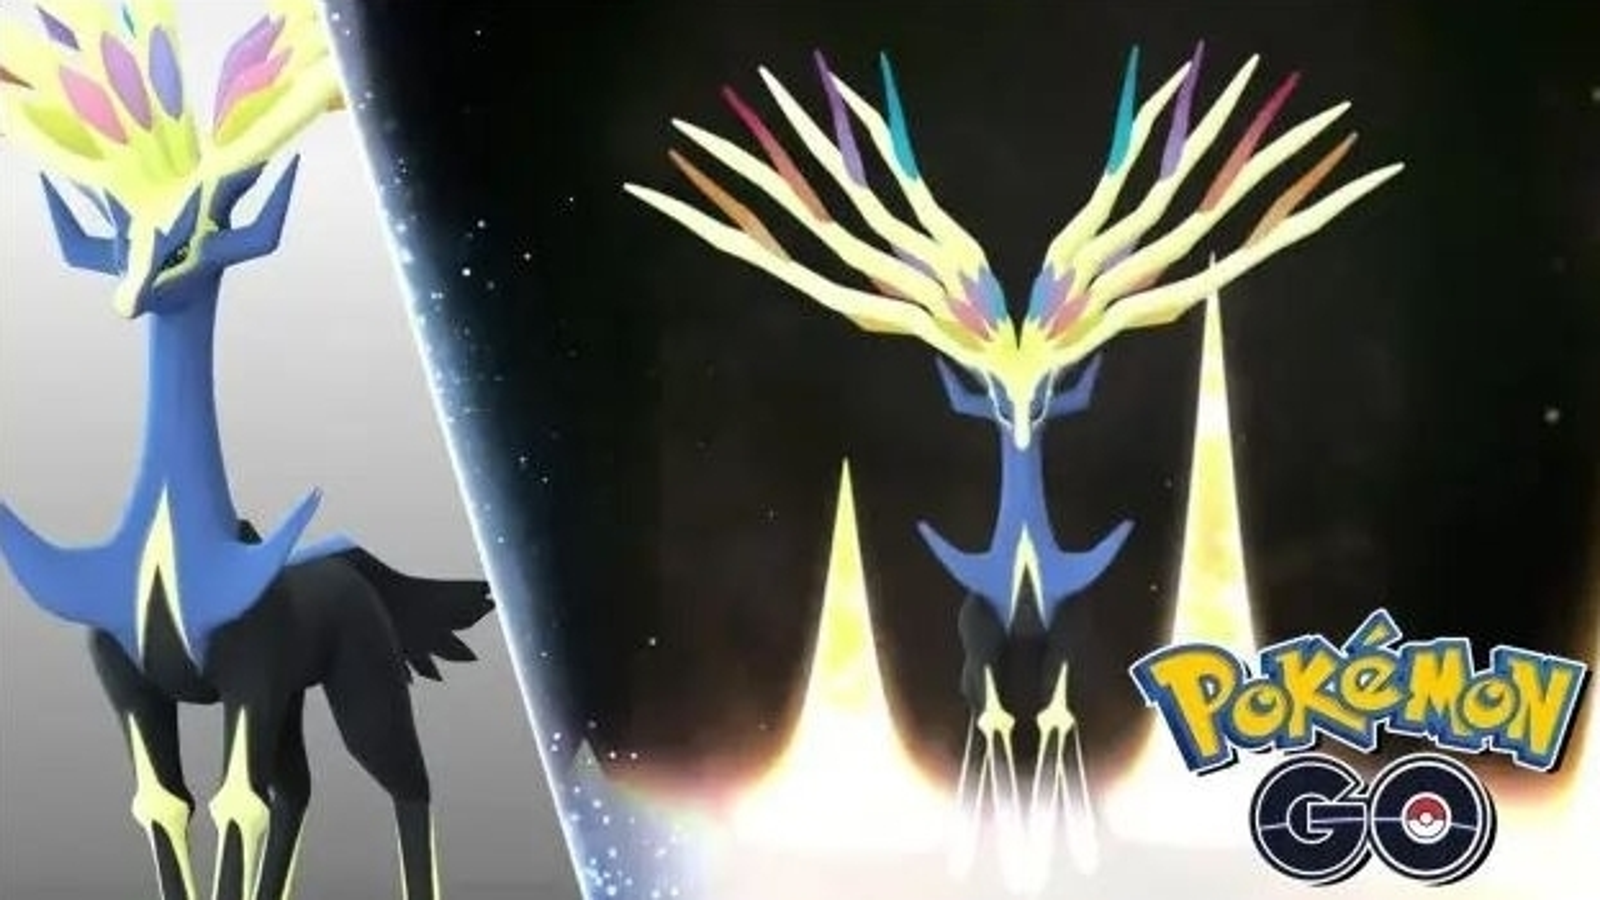 Pokémon Go - Evento Lendas Luminosas X - Como obter Xerneas